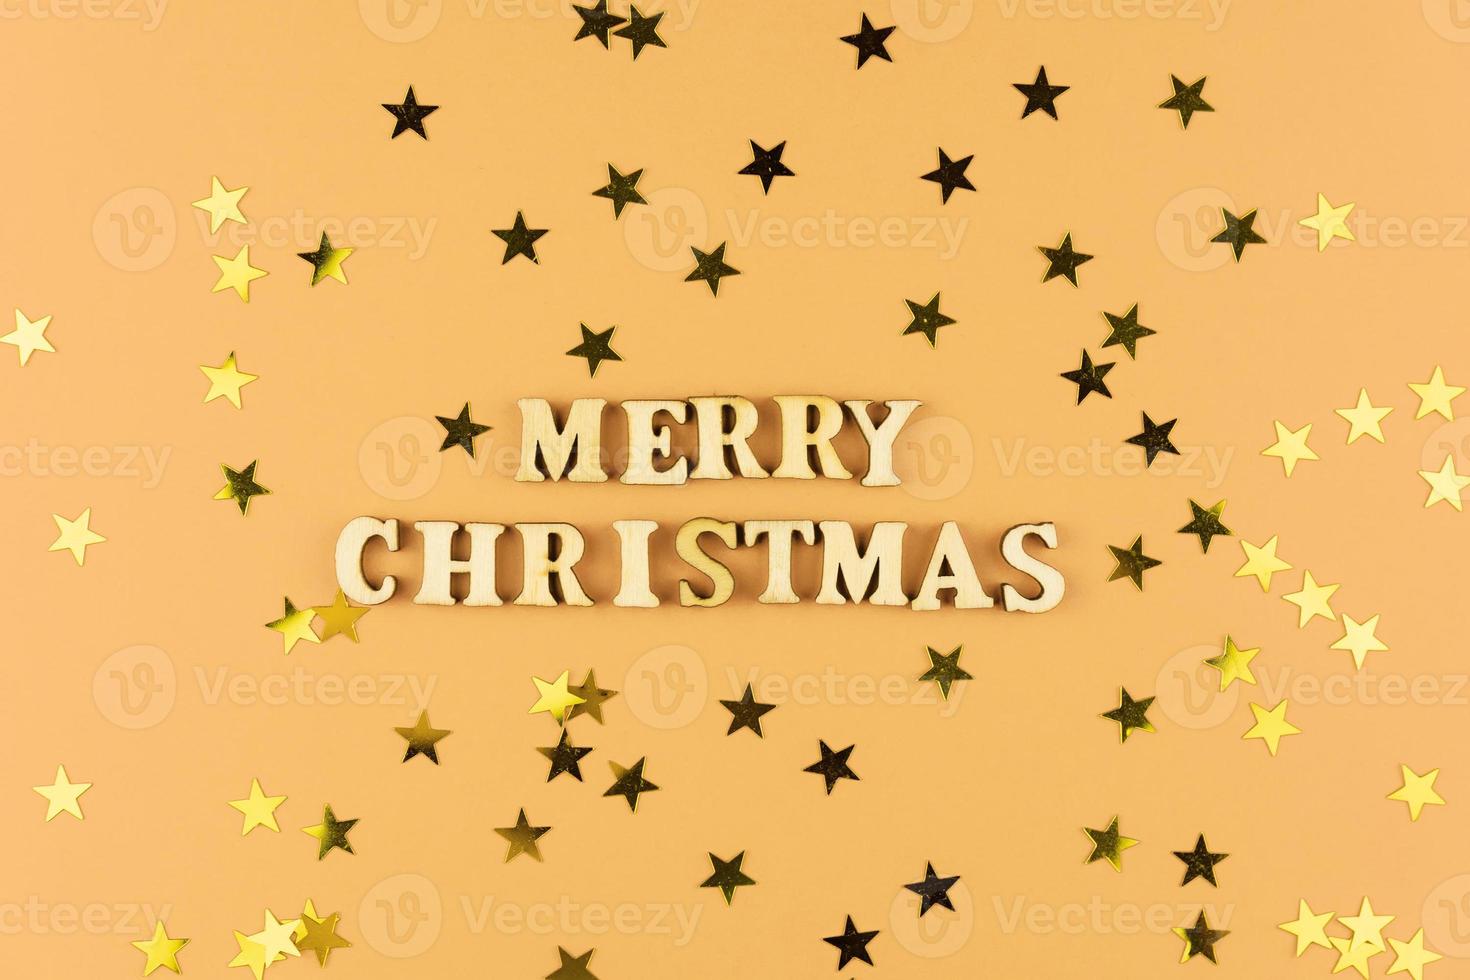 Holzbuchstaben auf beigem Hintergrund. frohe weihnachten schriftzug auf pastellpapier mit verstreuten sternkonfetti. festliche grußkarte. foto